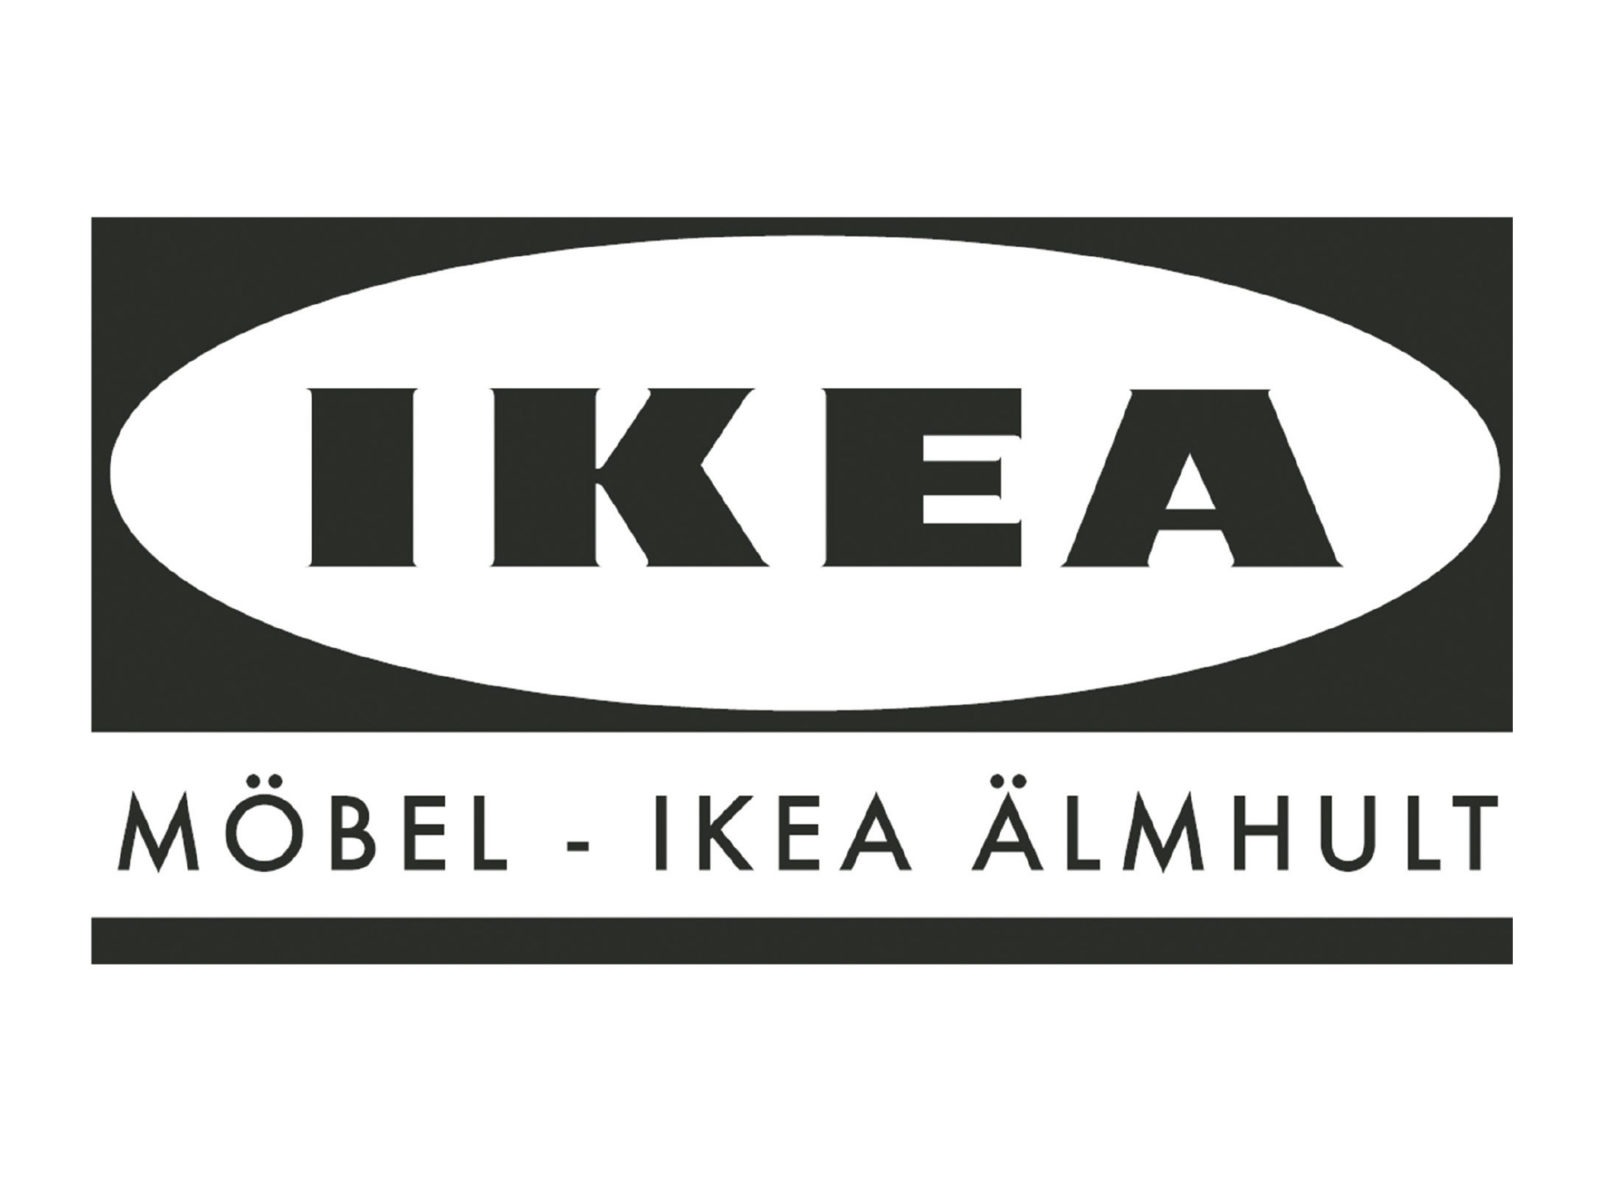 IKEA med svarta versaler på vit oval mot svart bakgrund. Under ovalen, på vit bård mot svart står MÖBEL-IKEA ÄLMHULT.